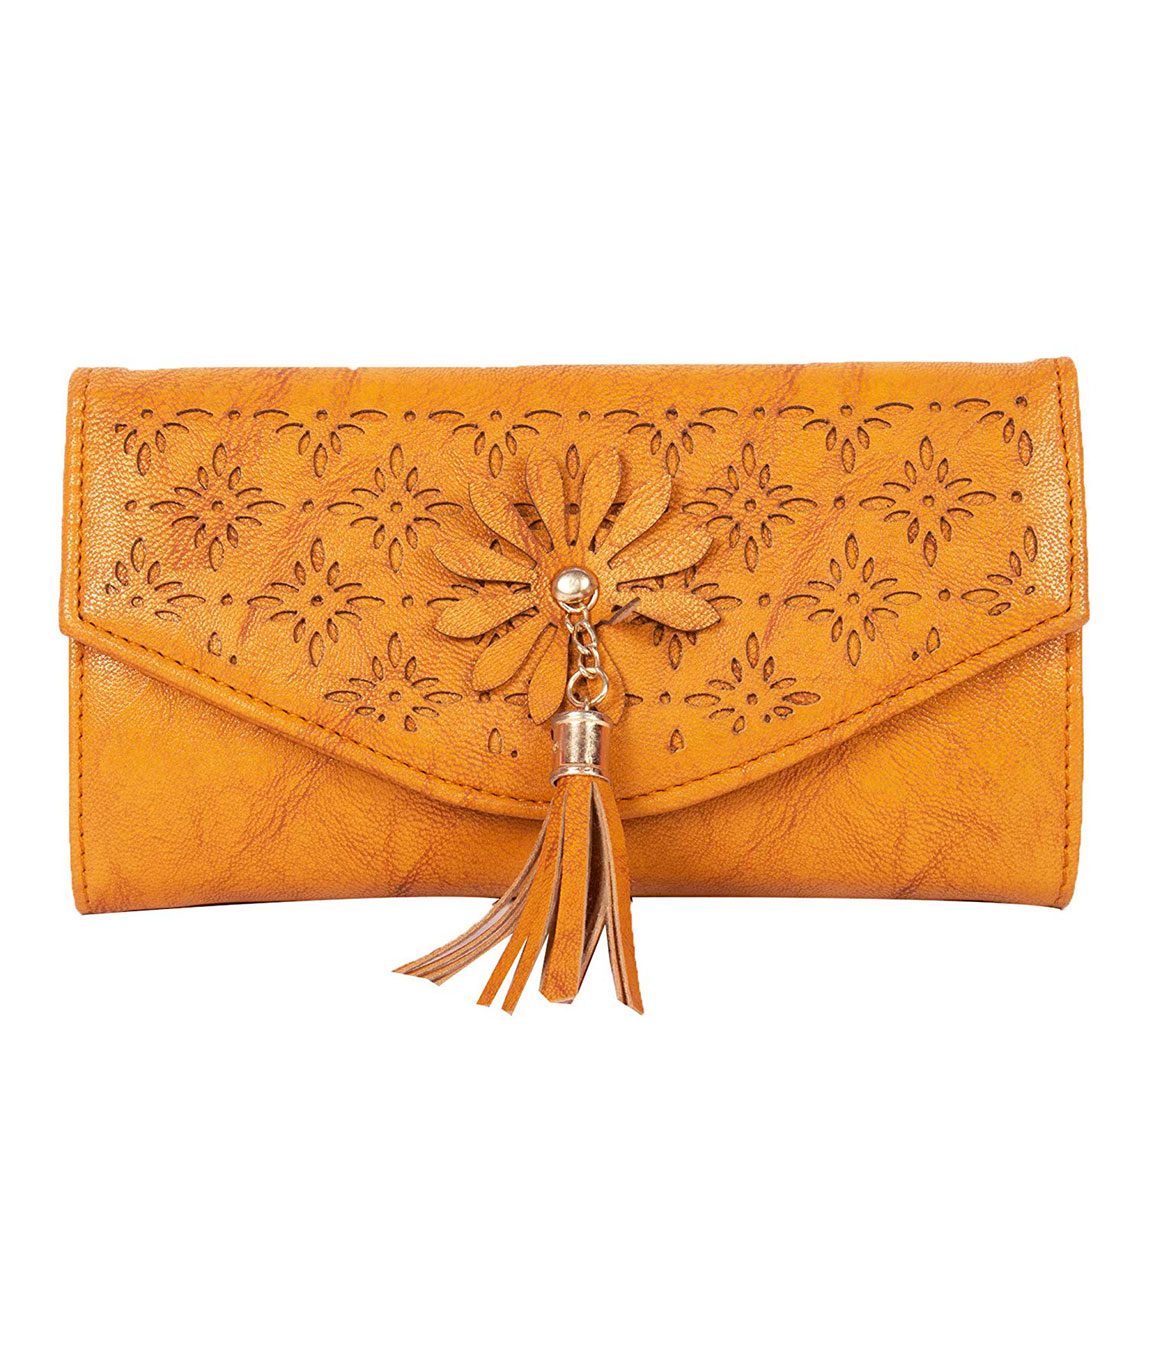 Fancy items wallets,purses handbags,ladies purse| Alibaba.com